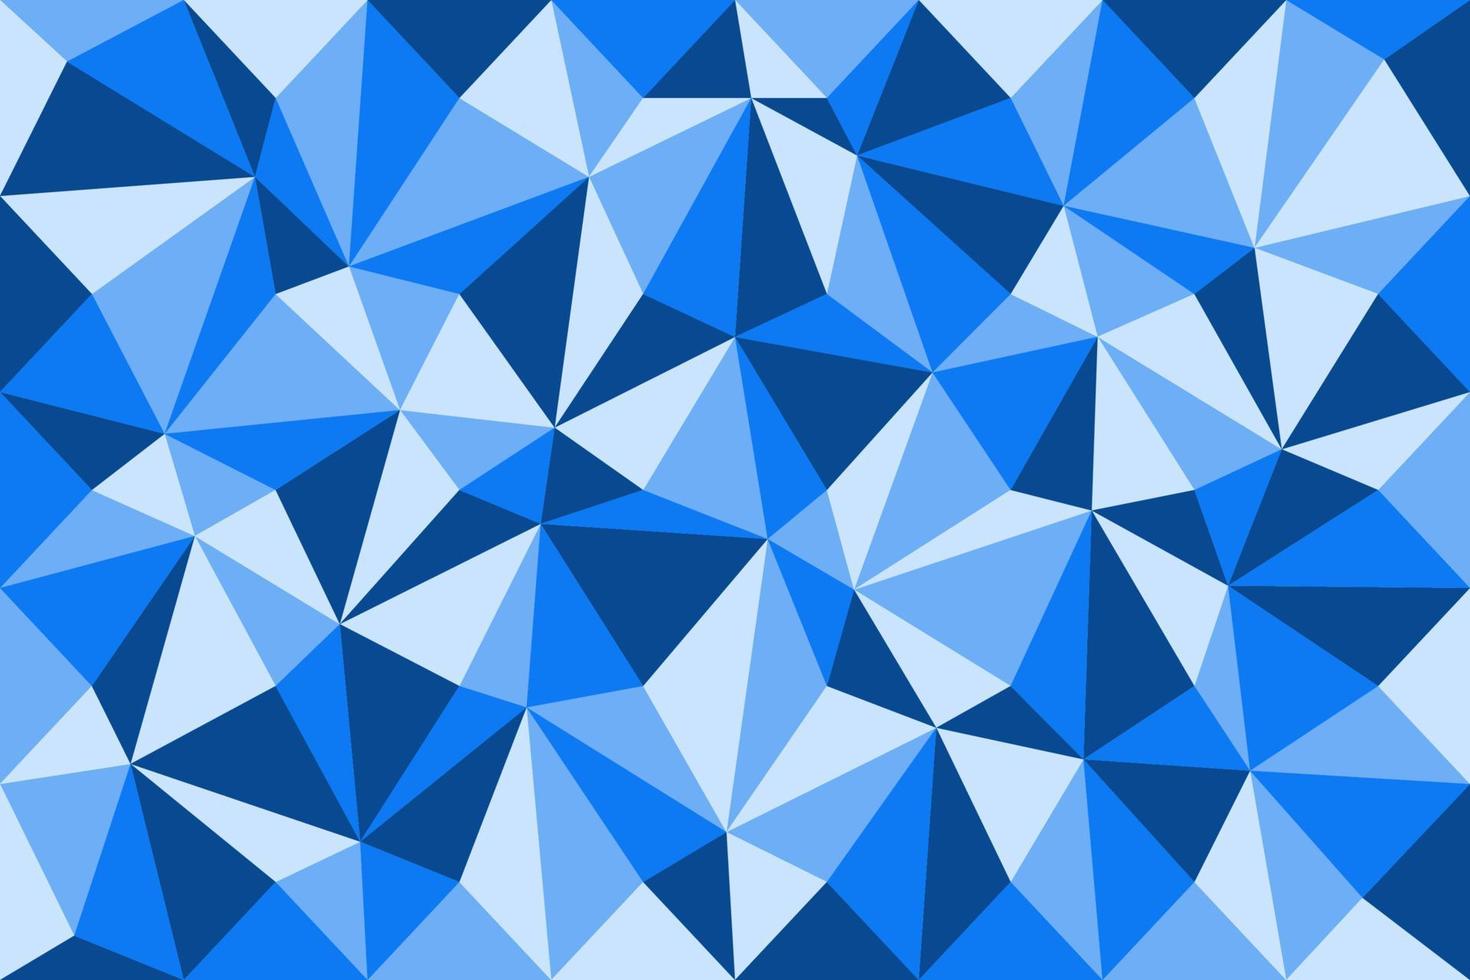 padrão de vetor azul claro. modelo triangular. amostra geométrica. repetindo a rotina com formas de triângulo.